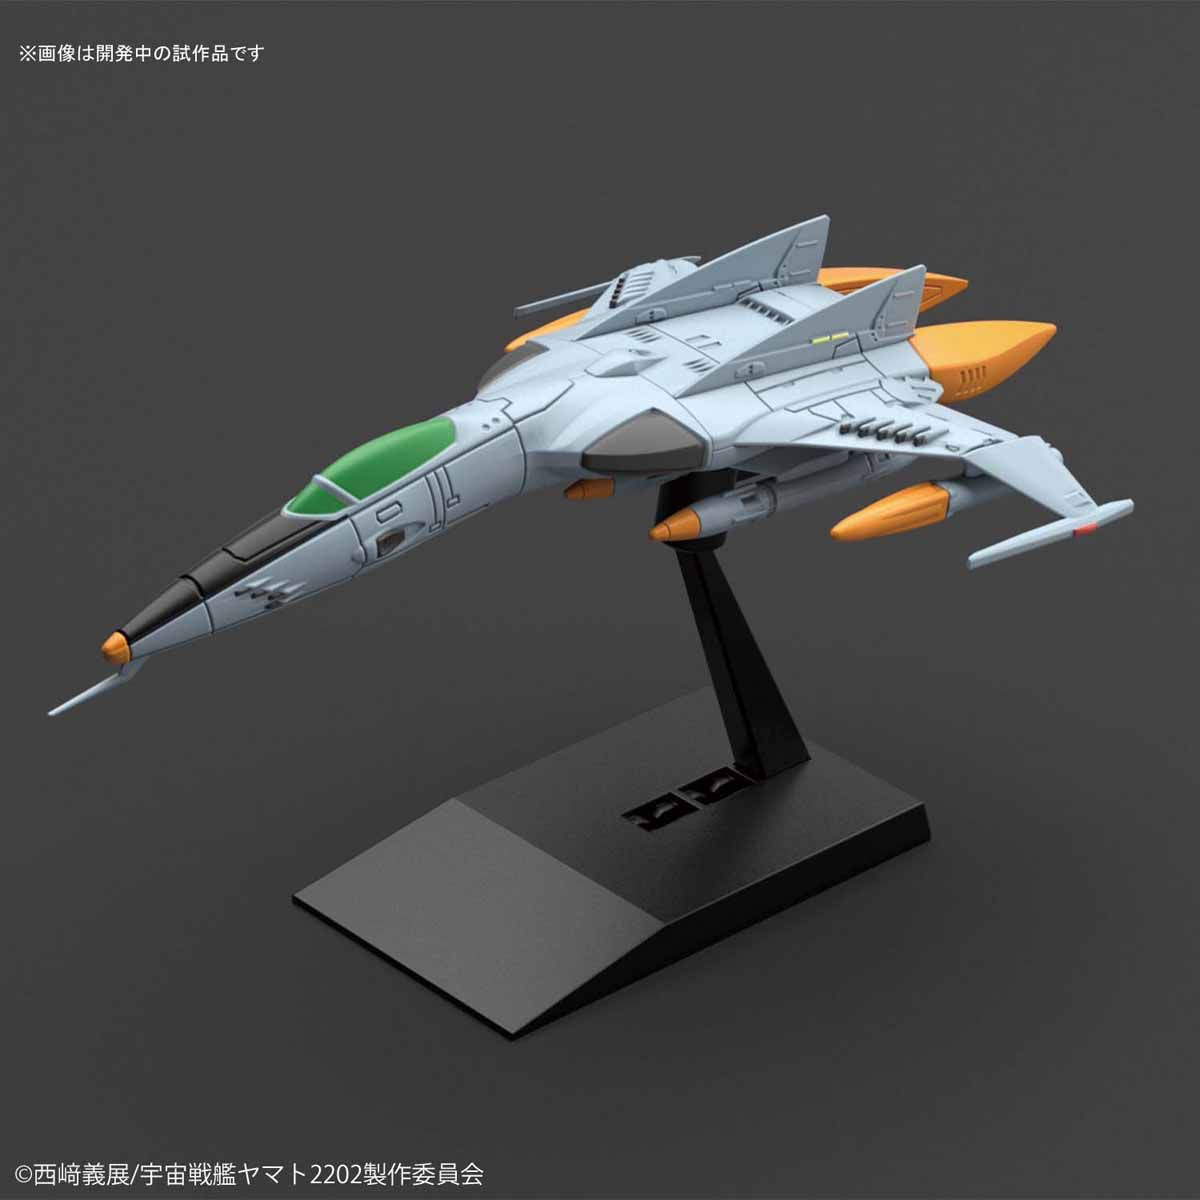 メカコレクション 1式空間戦闘攻撃機コスモタイガーII(複座型/単座型